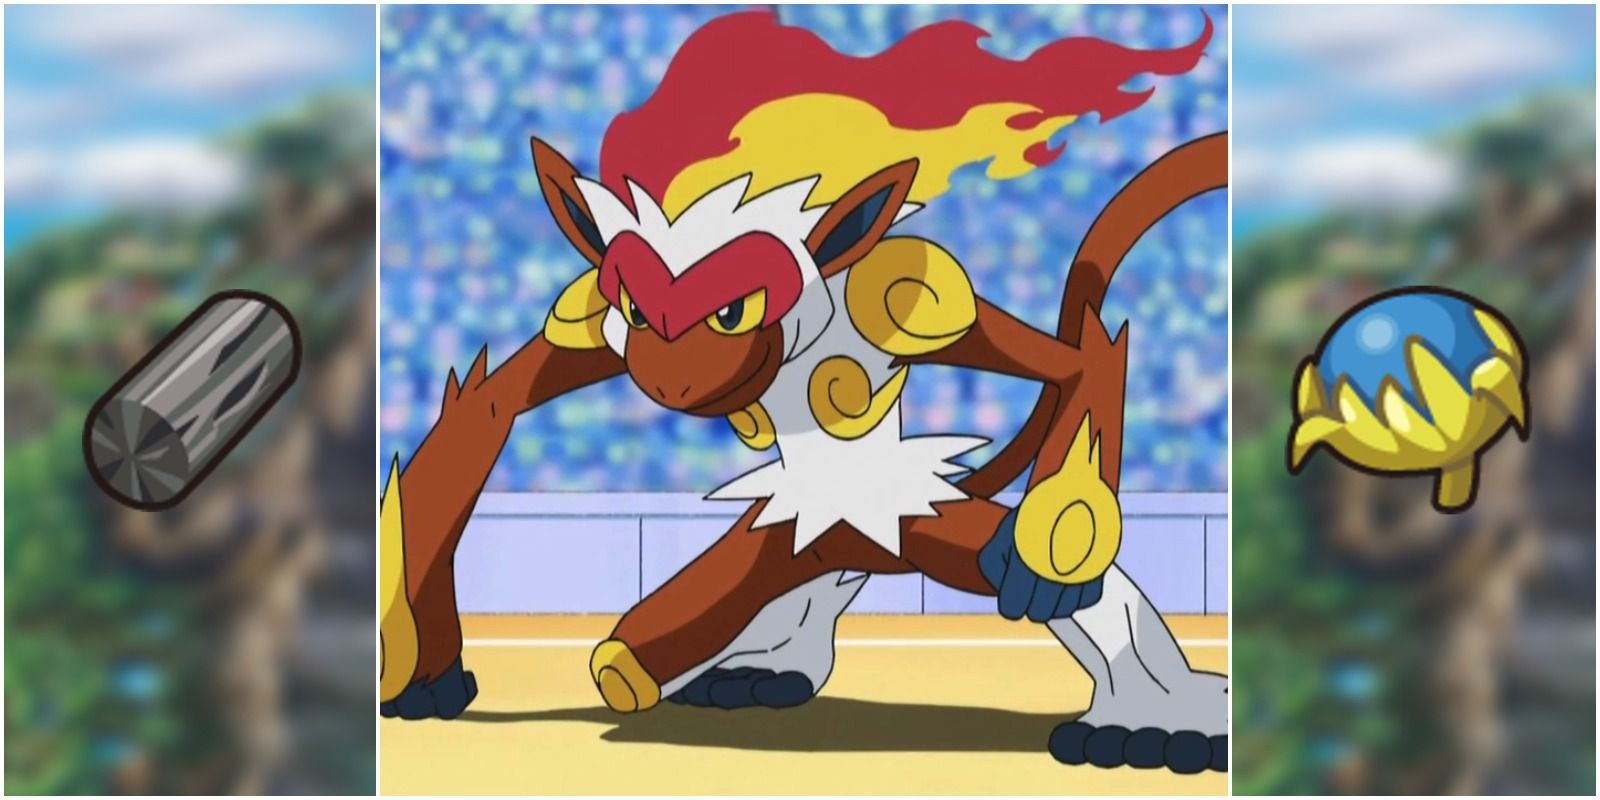 Blaze is Freaking Epic in the Anime - Pokémemes - Pokémon, Pokémon GO